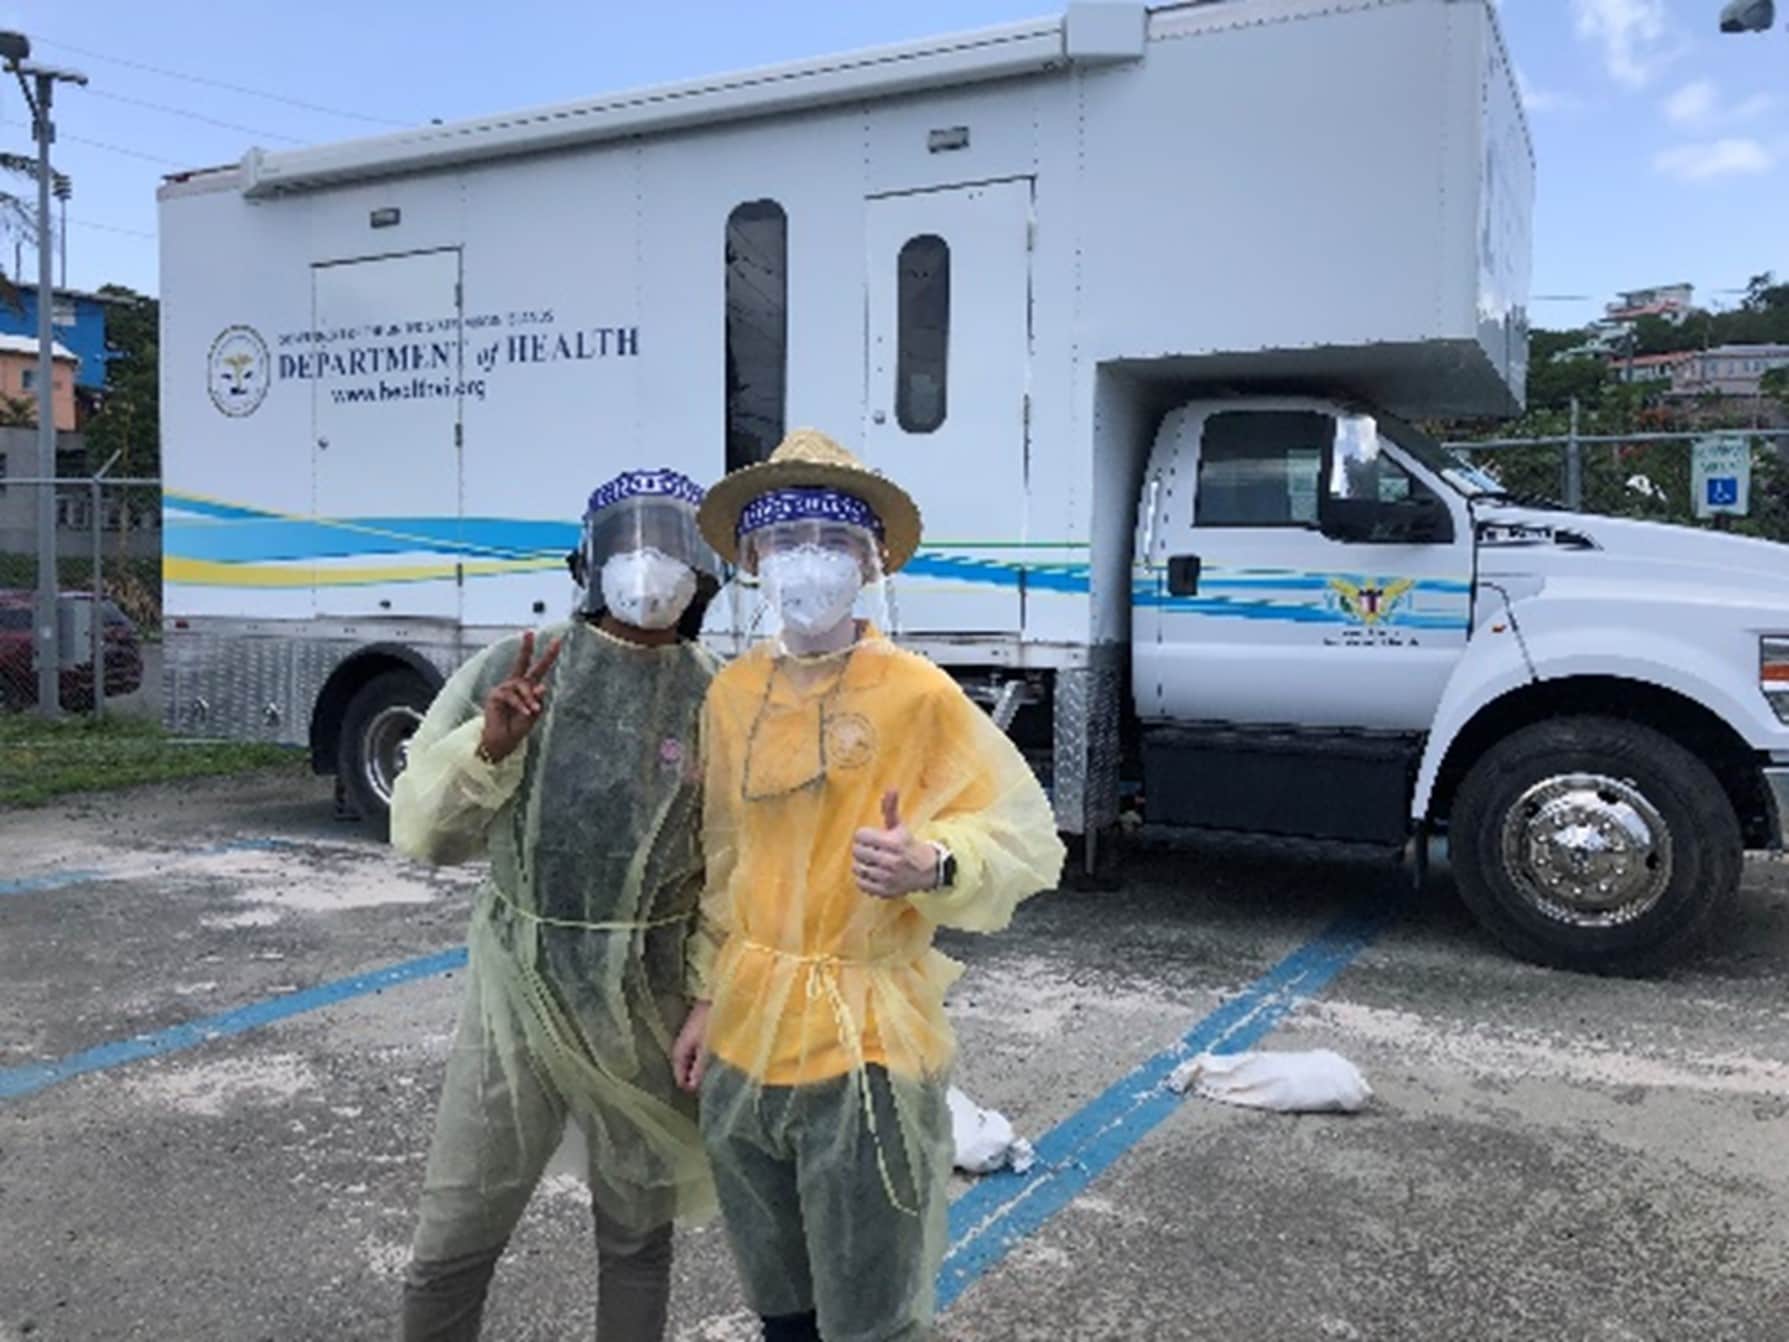 U.S. Virgin Islands EIS officer Katie Labgold (right) and CSTE Applied Epidemiology Fellow Jade Bernadel